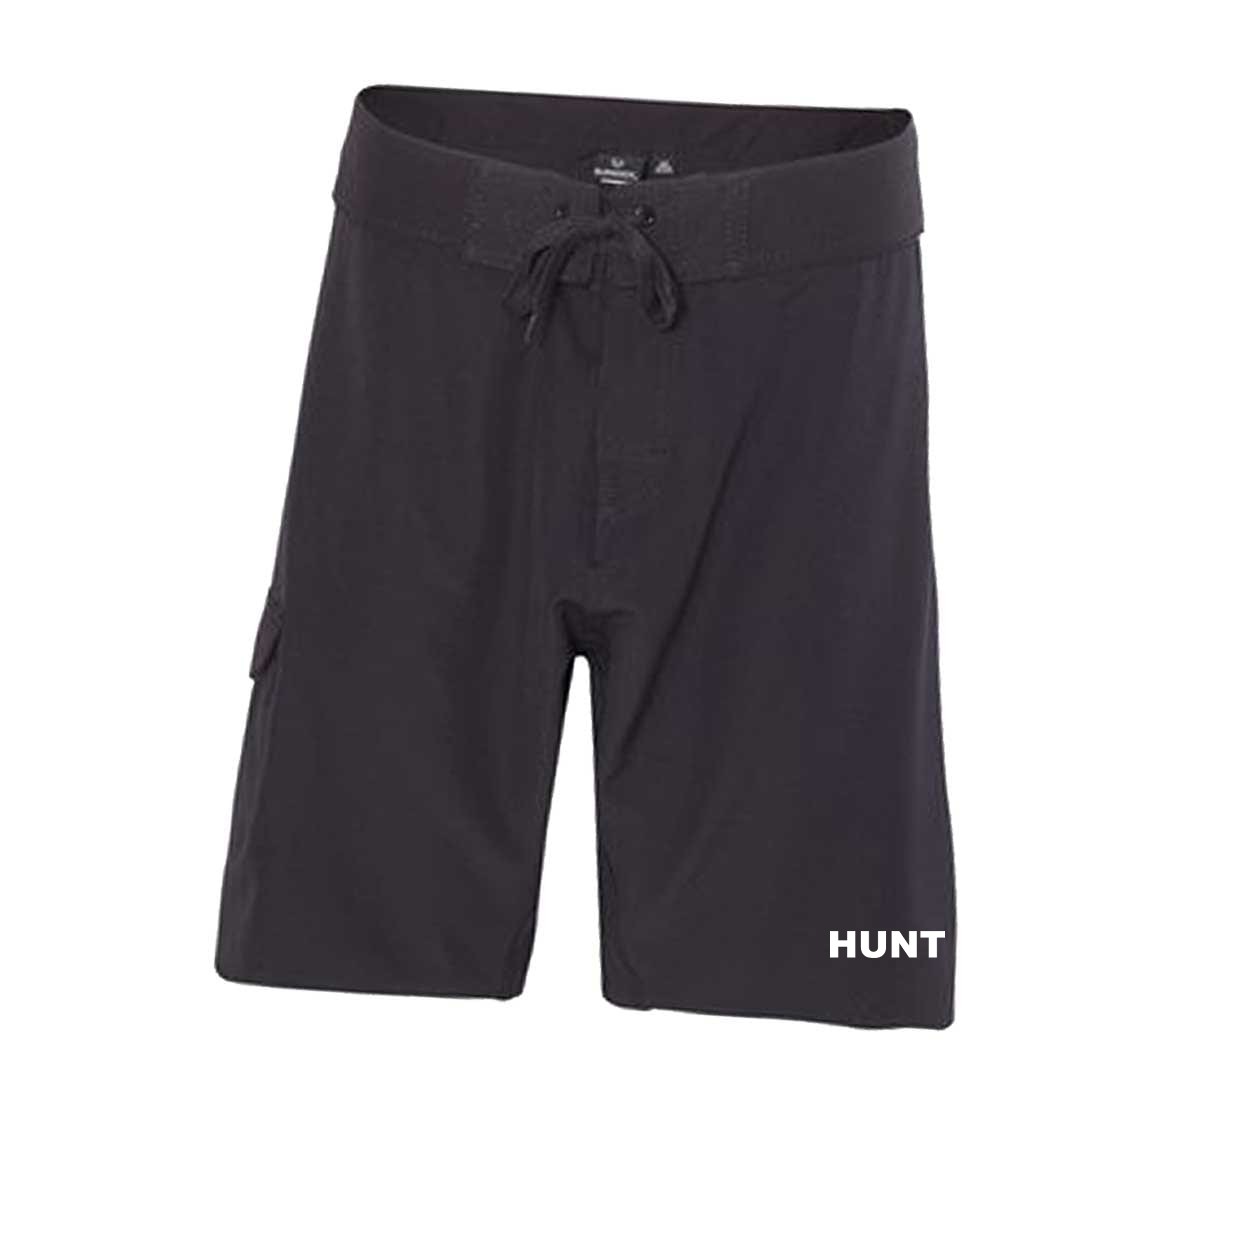 Hunt Brand Logo Classic Men's Unisex Boardshorts Swim Trunks Black (White Logo)